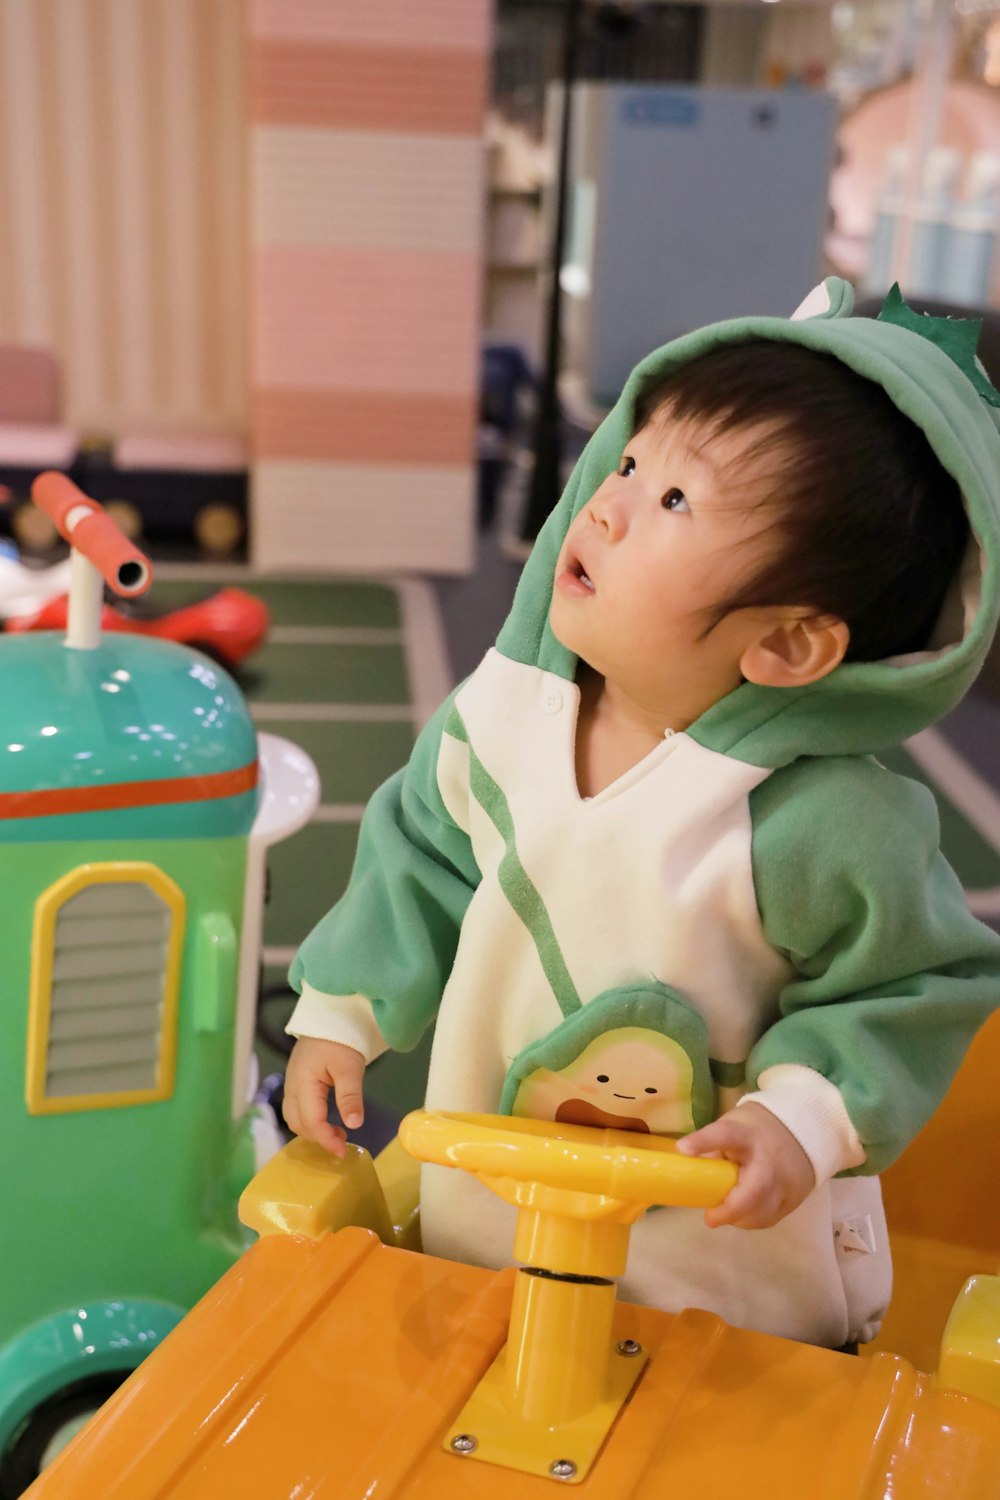 chico con sudadera con capucha verde montando coche amarillo de juguete